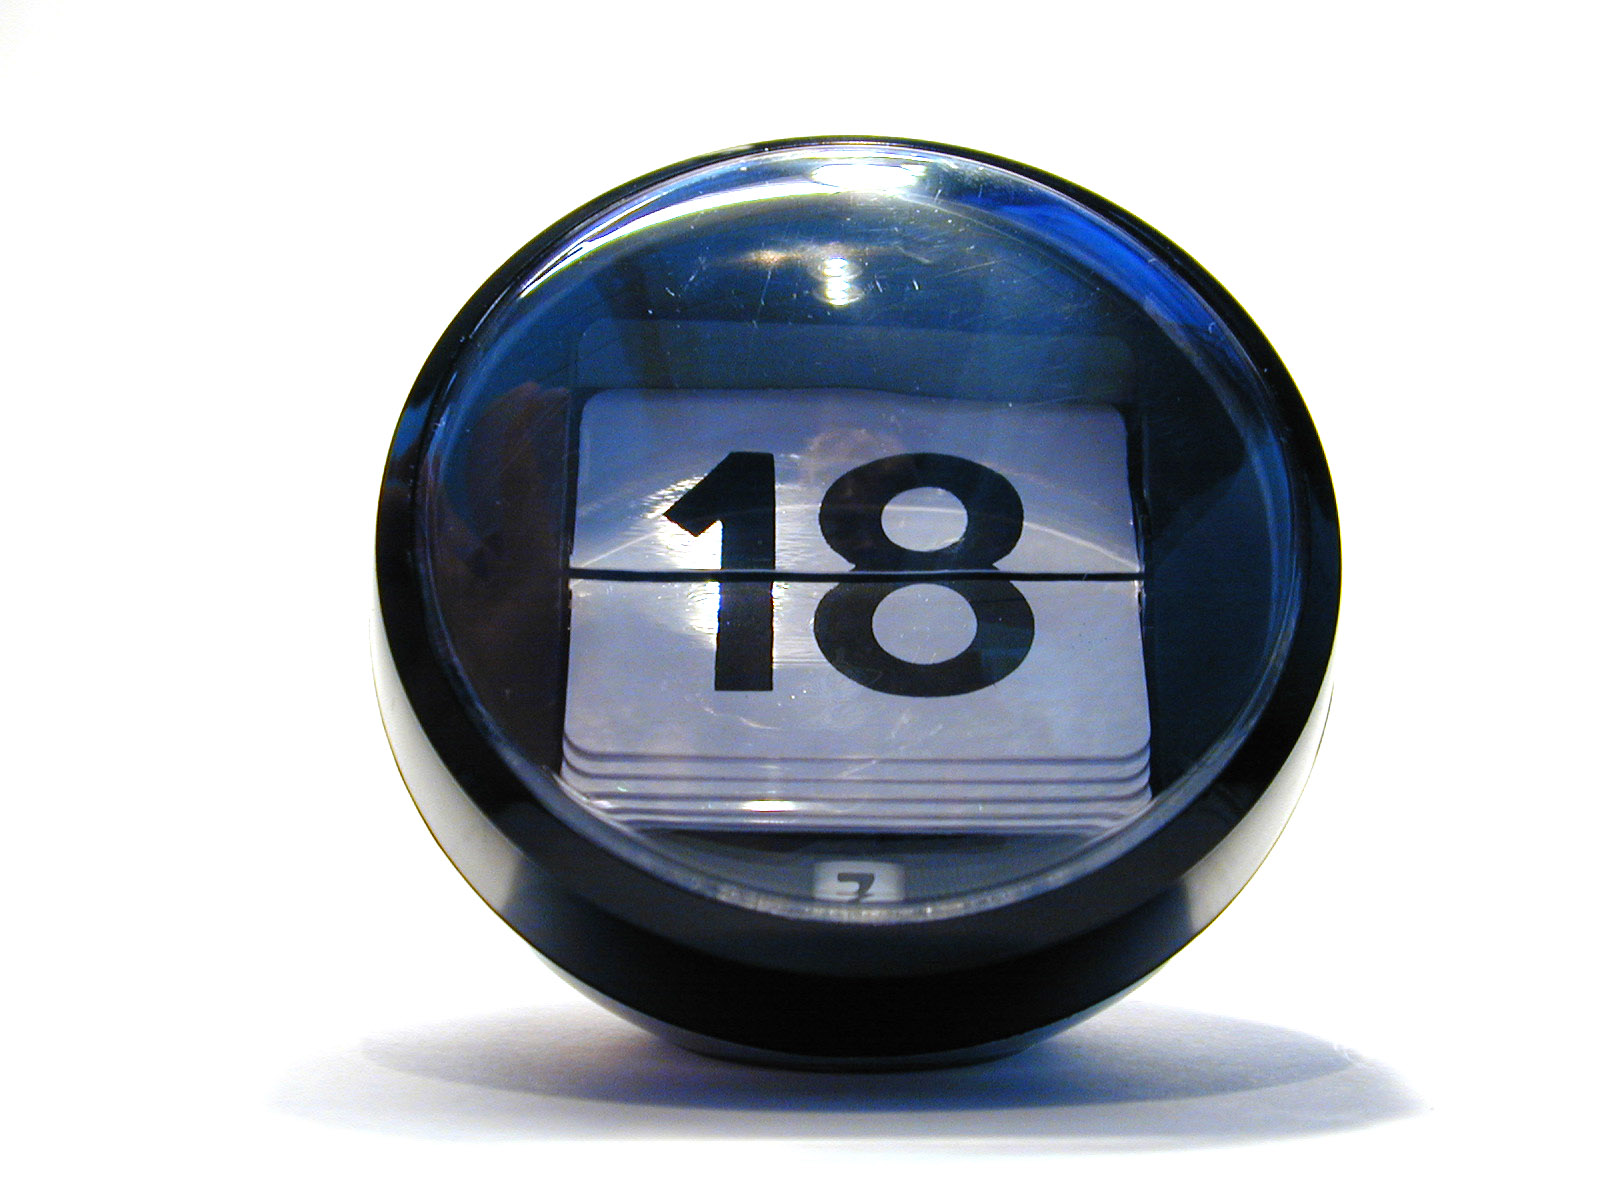 globe sphere plastic number counter 18 eighteen clock